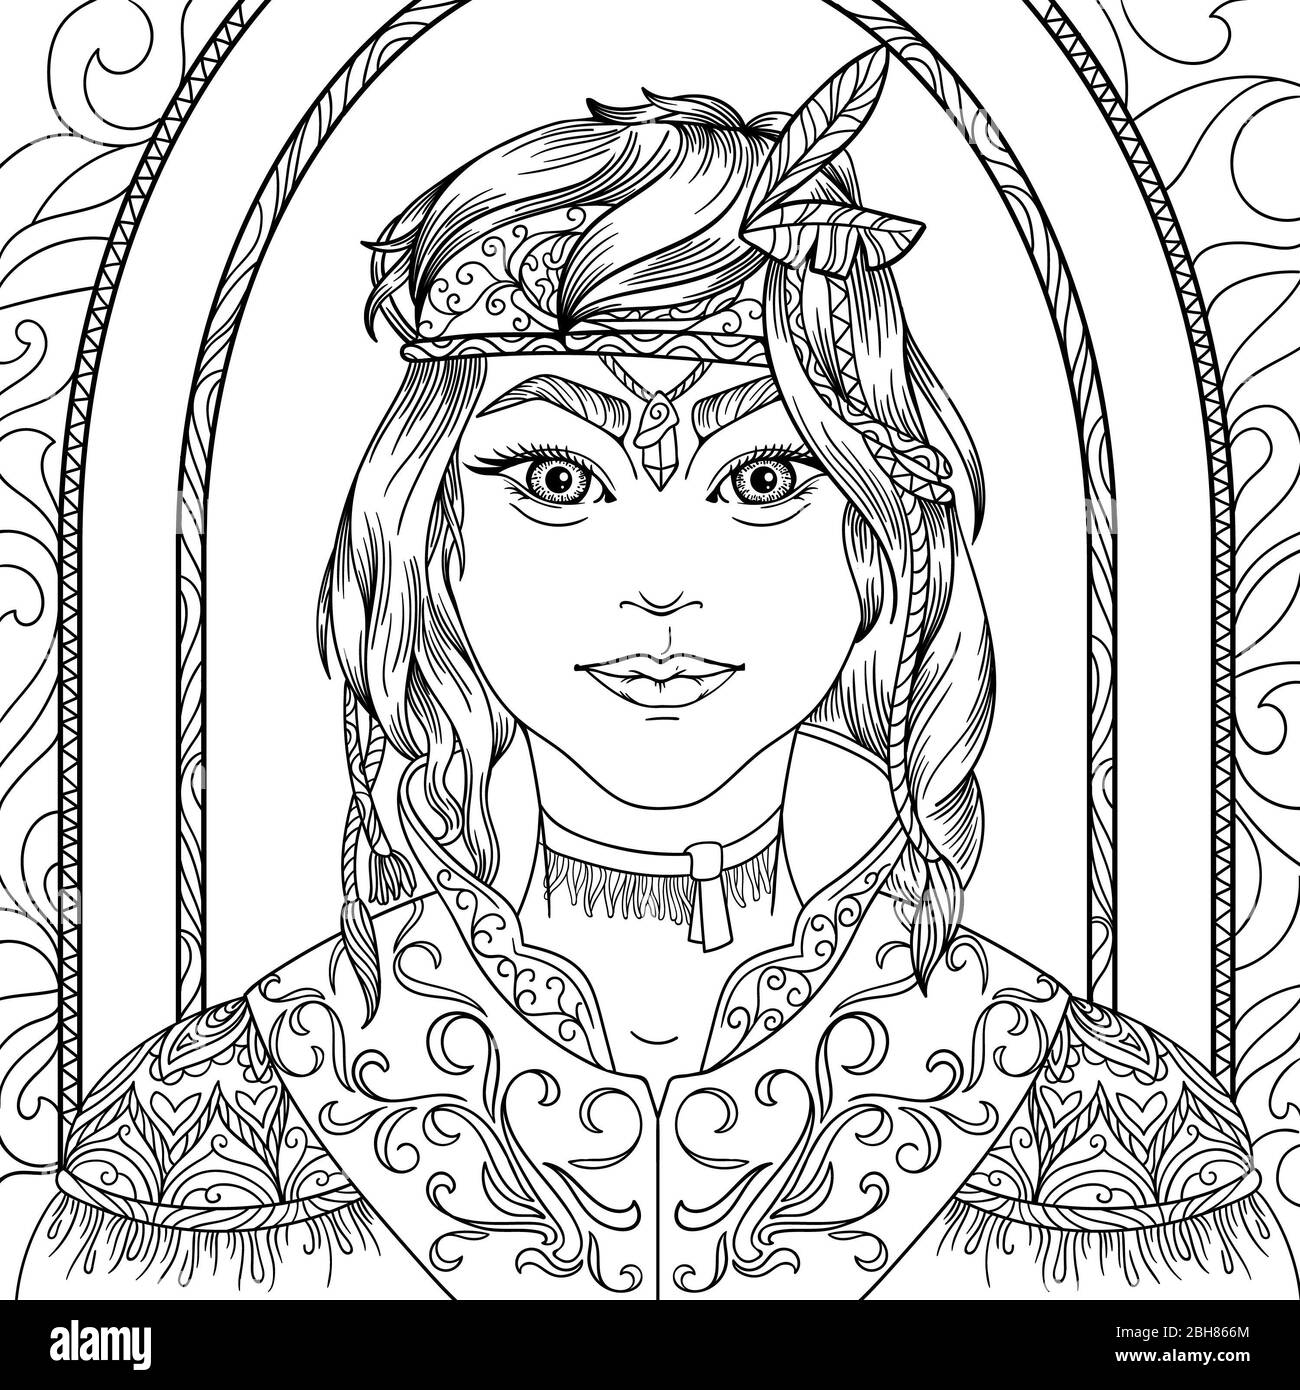 Malseite für Erwachsene Anti Stress mit schönen Mädchen Jäger Fantasy-Charaktere mit schwarzem und weißem Hintergrund Stockfoto